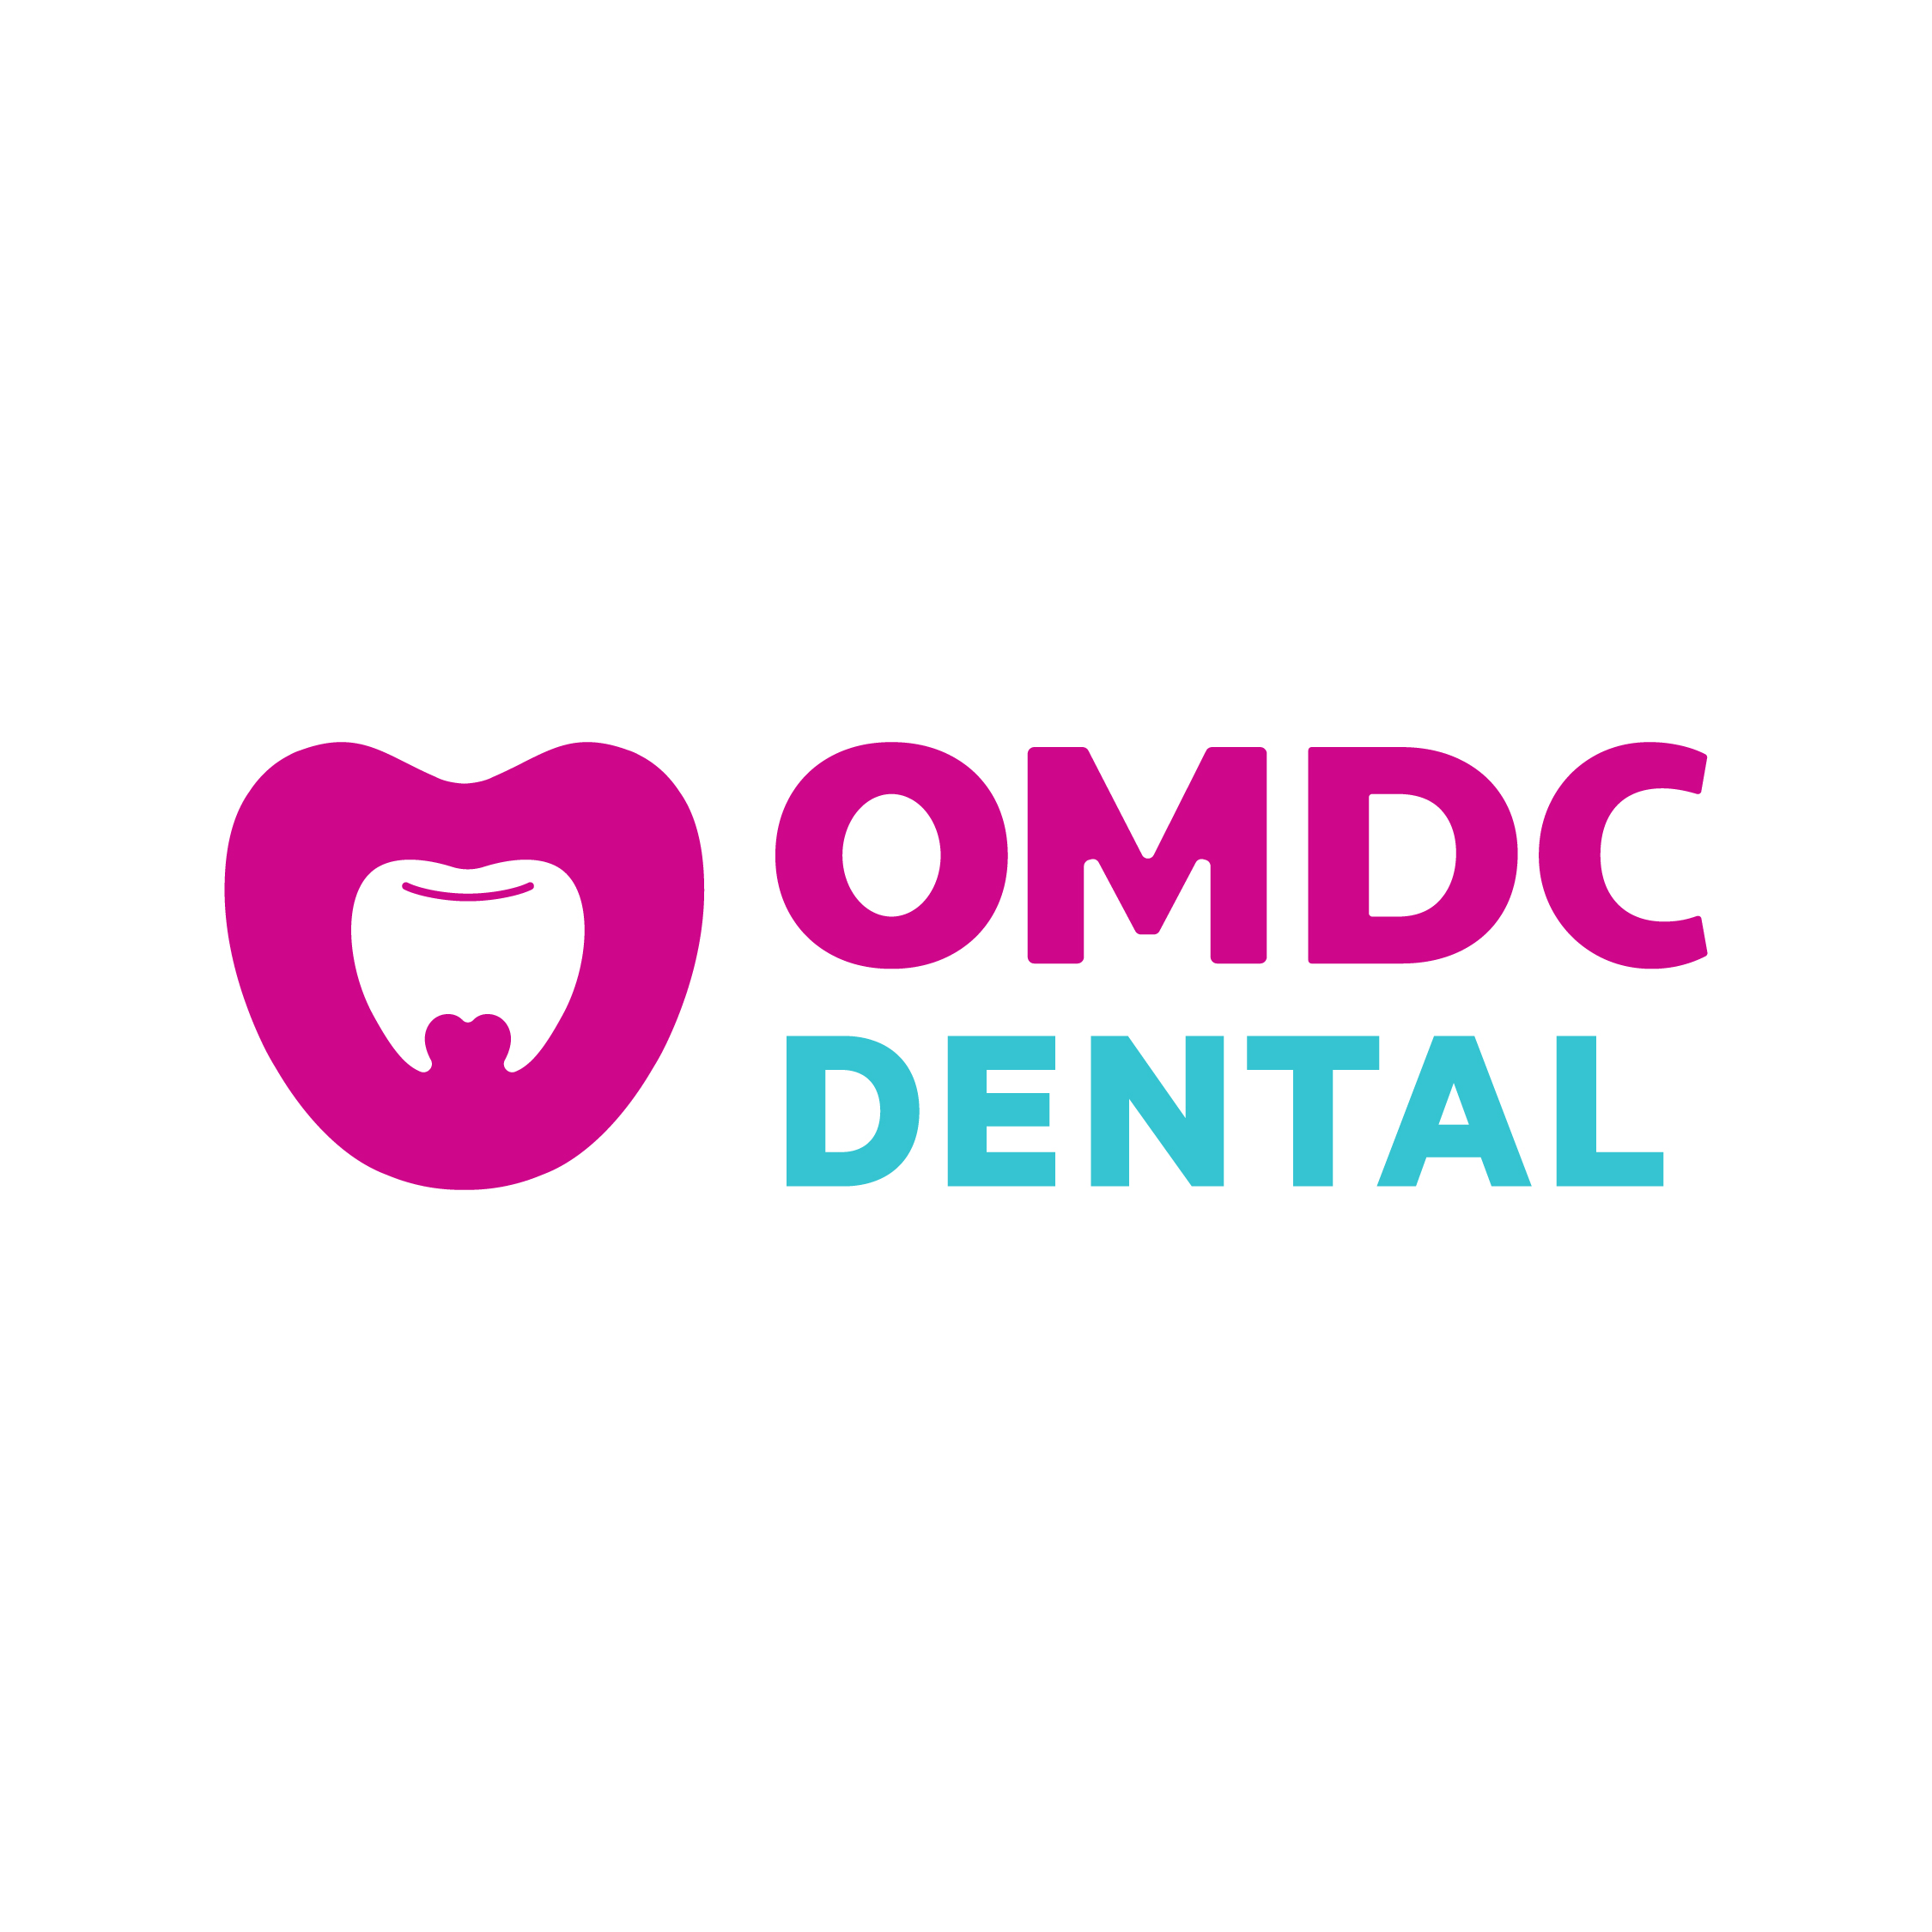 OMDC Dental